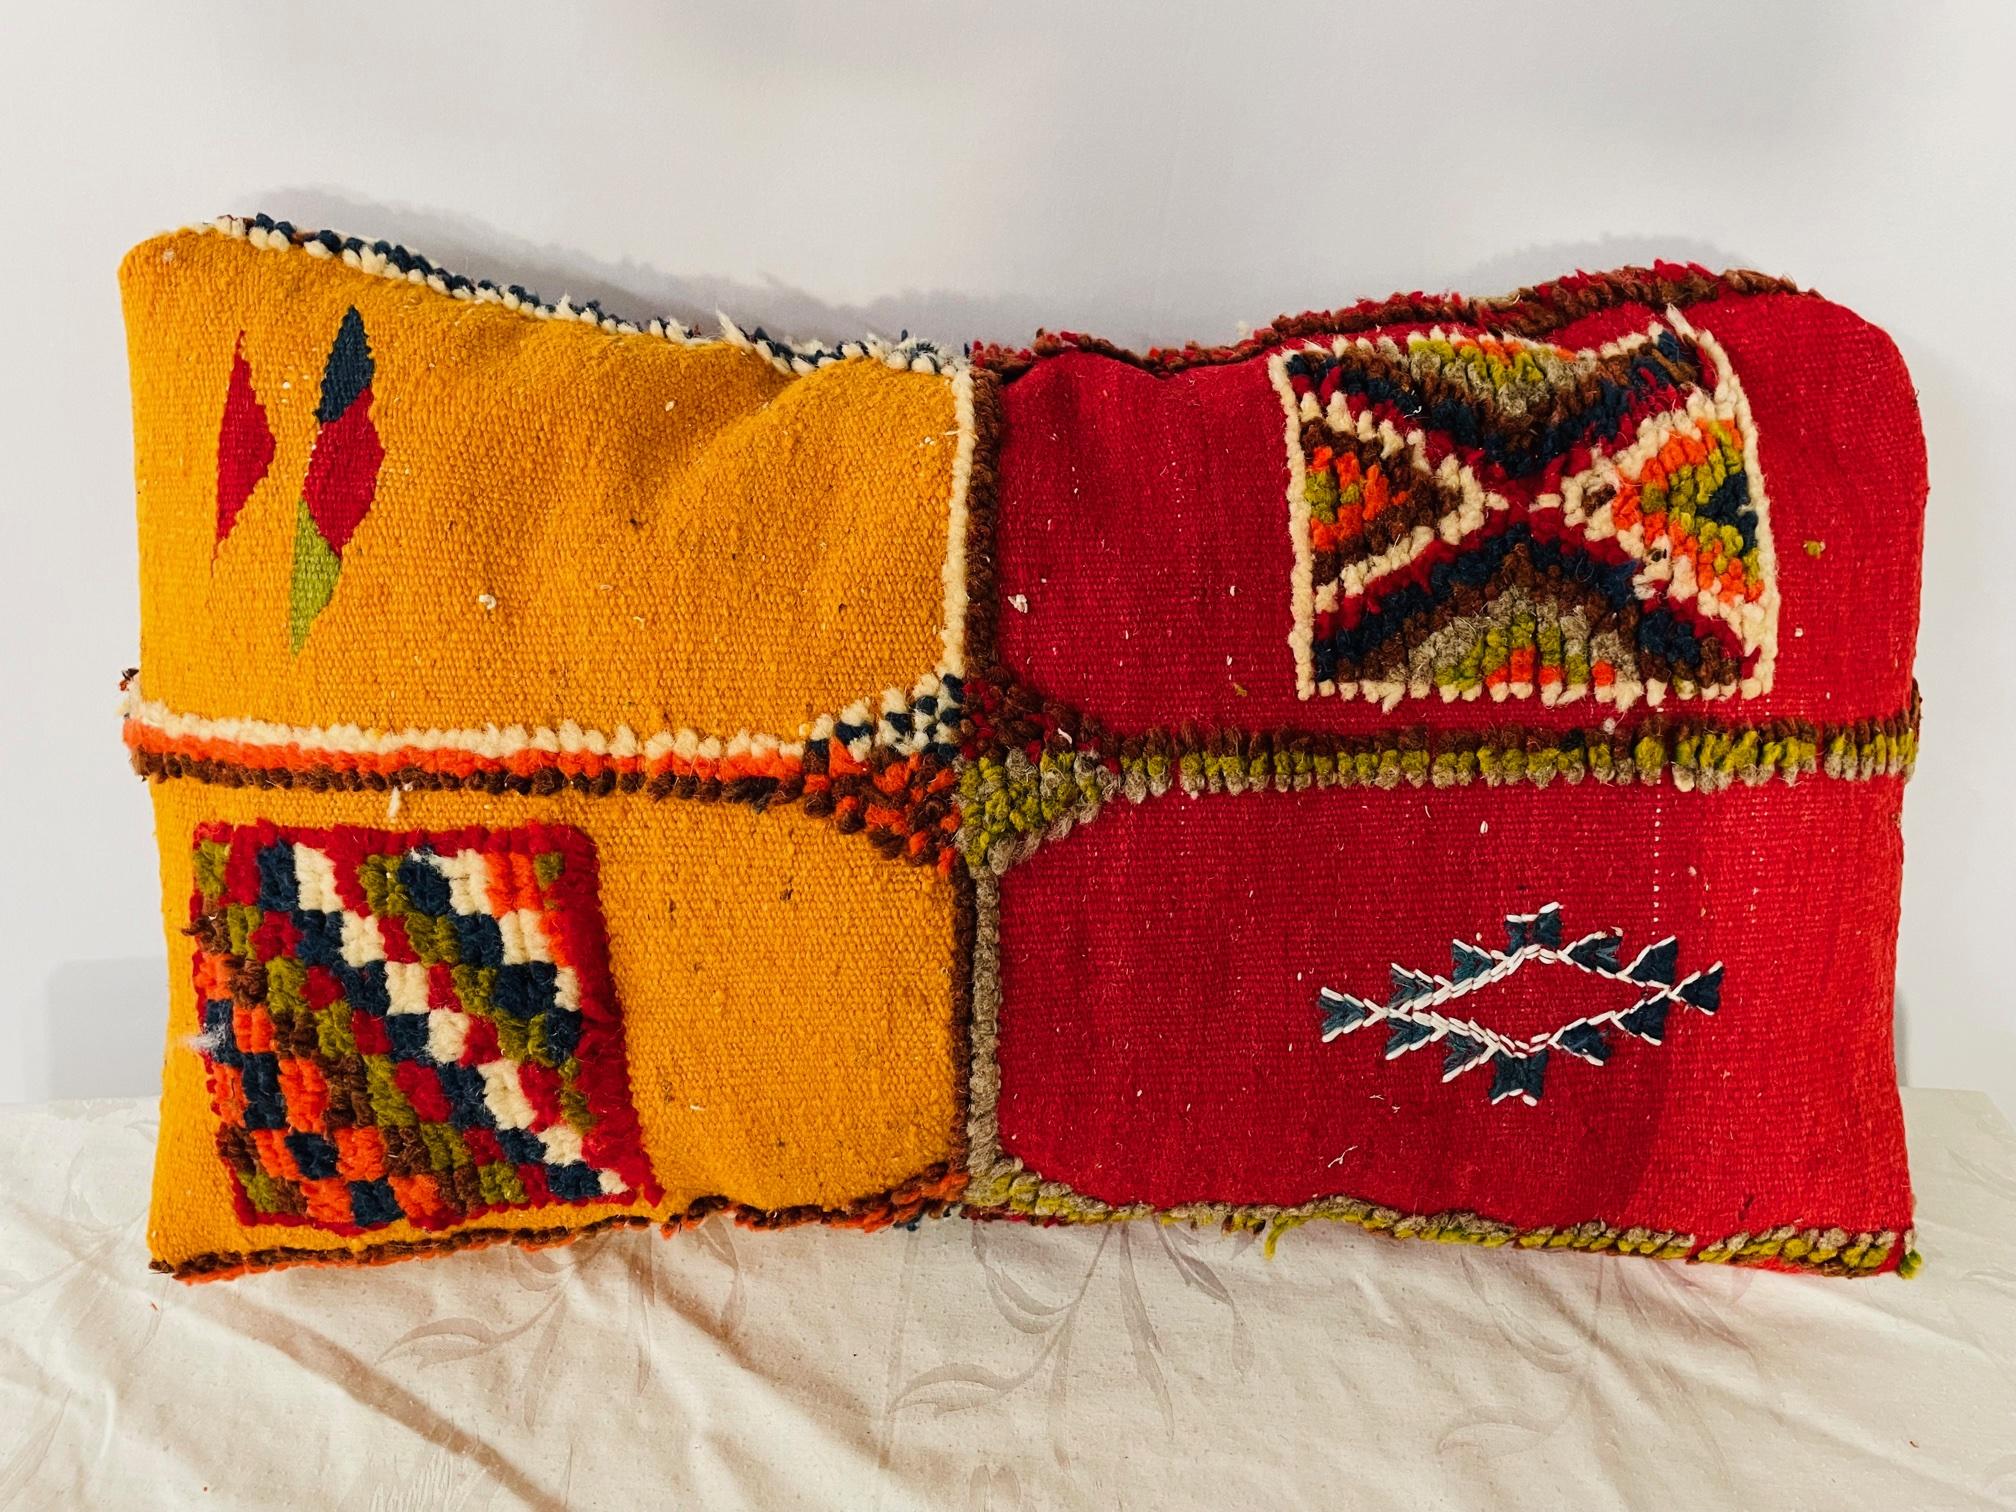 Fabriqué sur mesure à partir d'un tapis marocain vintage tissé à la main dans la région tribale berbère des montagnes de l'Atlas, cette paire de coussins ou d'oreillers kilim unique en son genre présente des couleurs jaunes/ moutarde et rouges